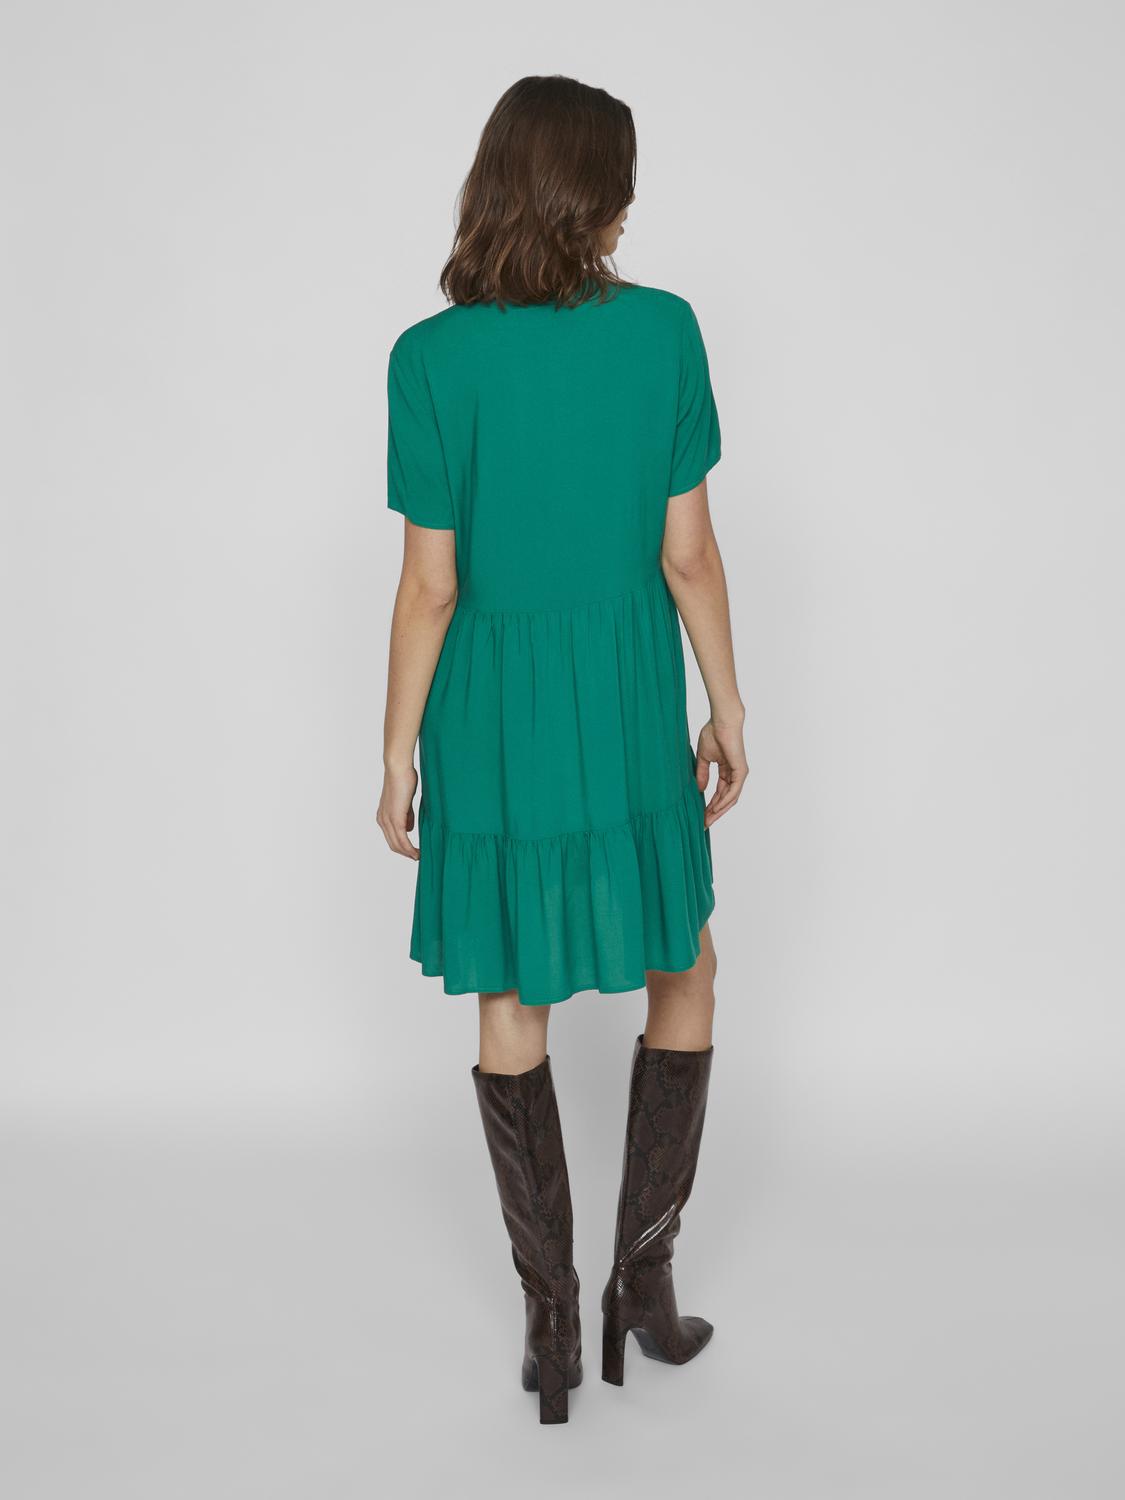 VIPAYA Dress - Ultramarine Green